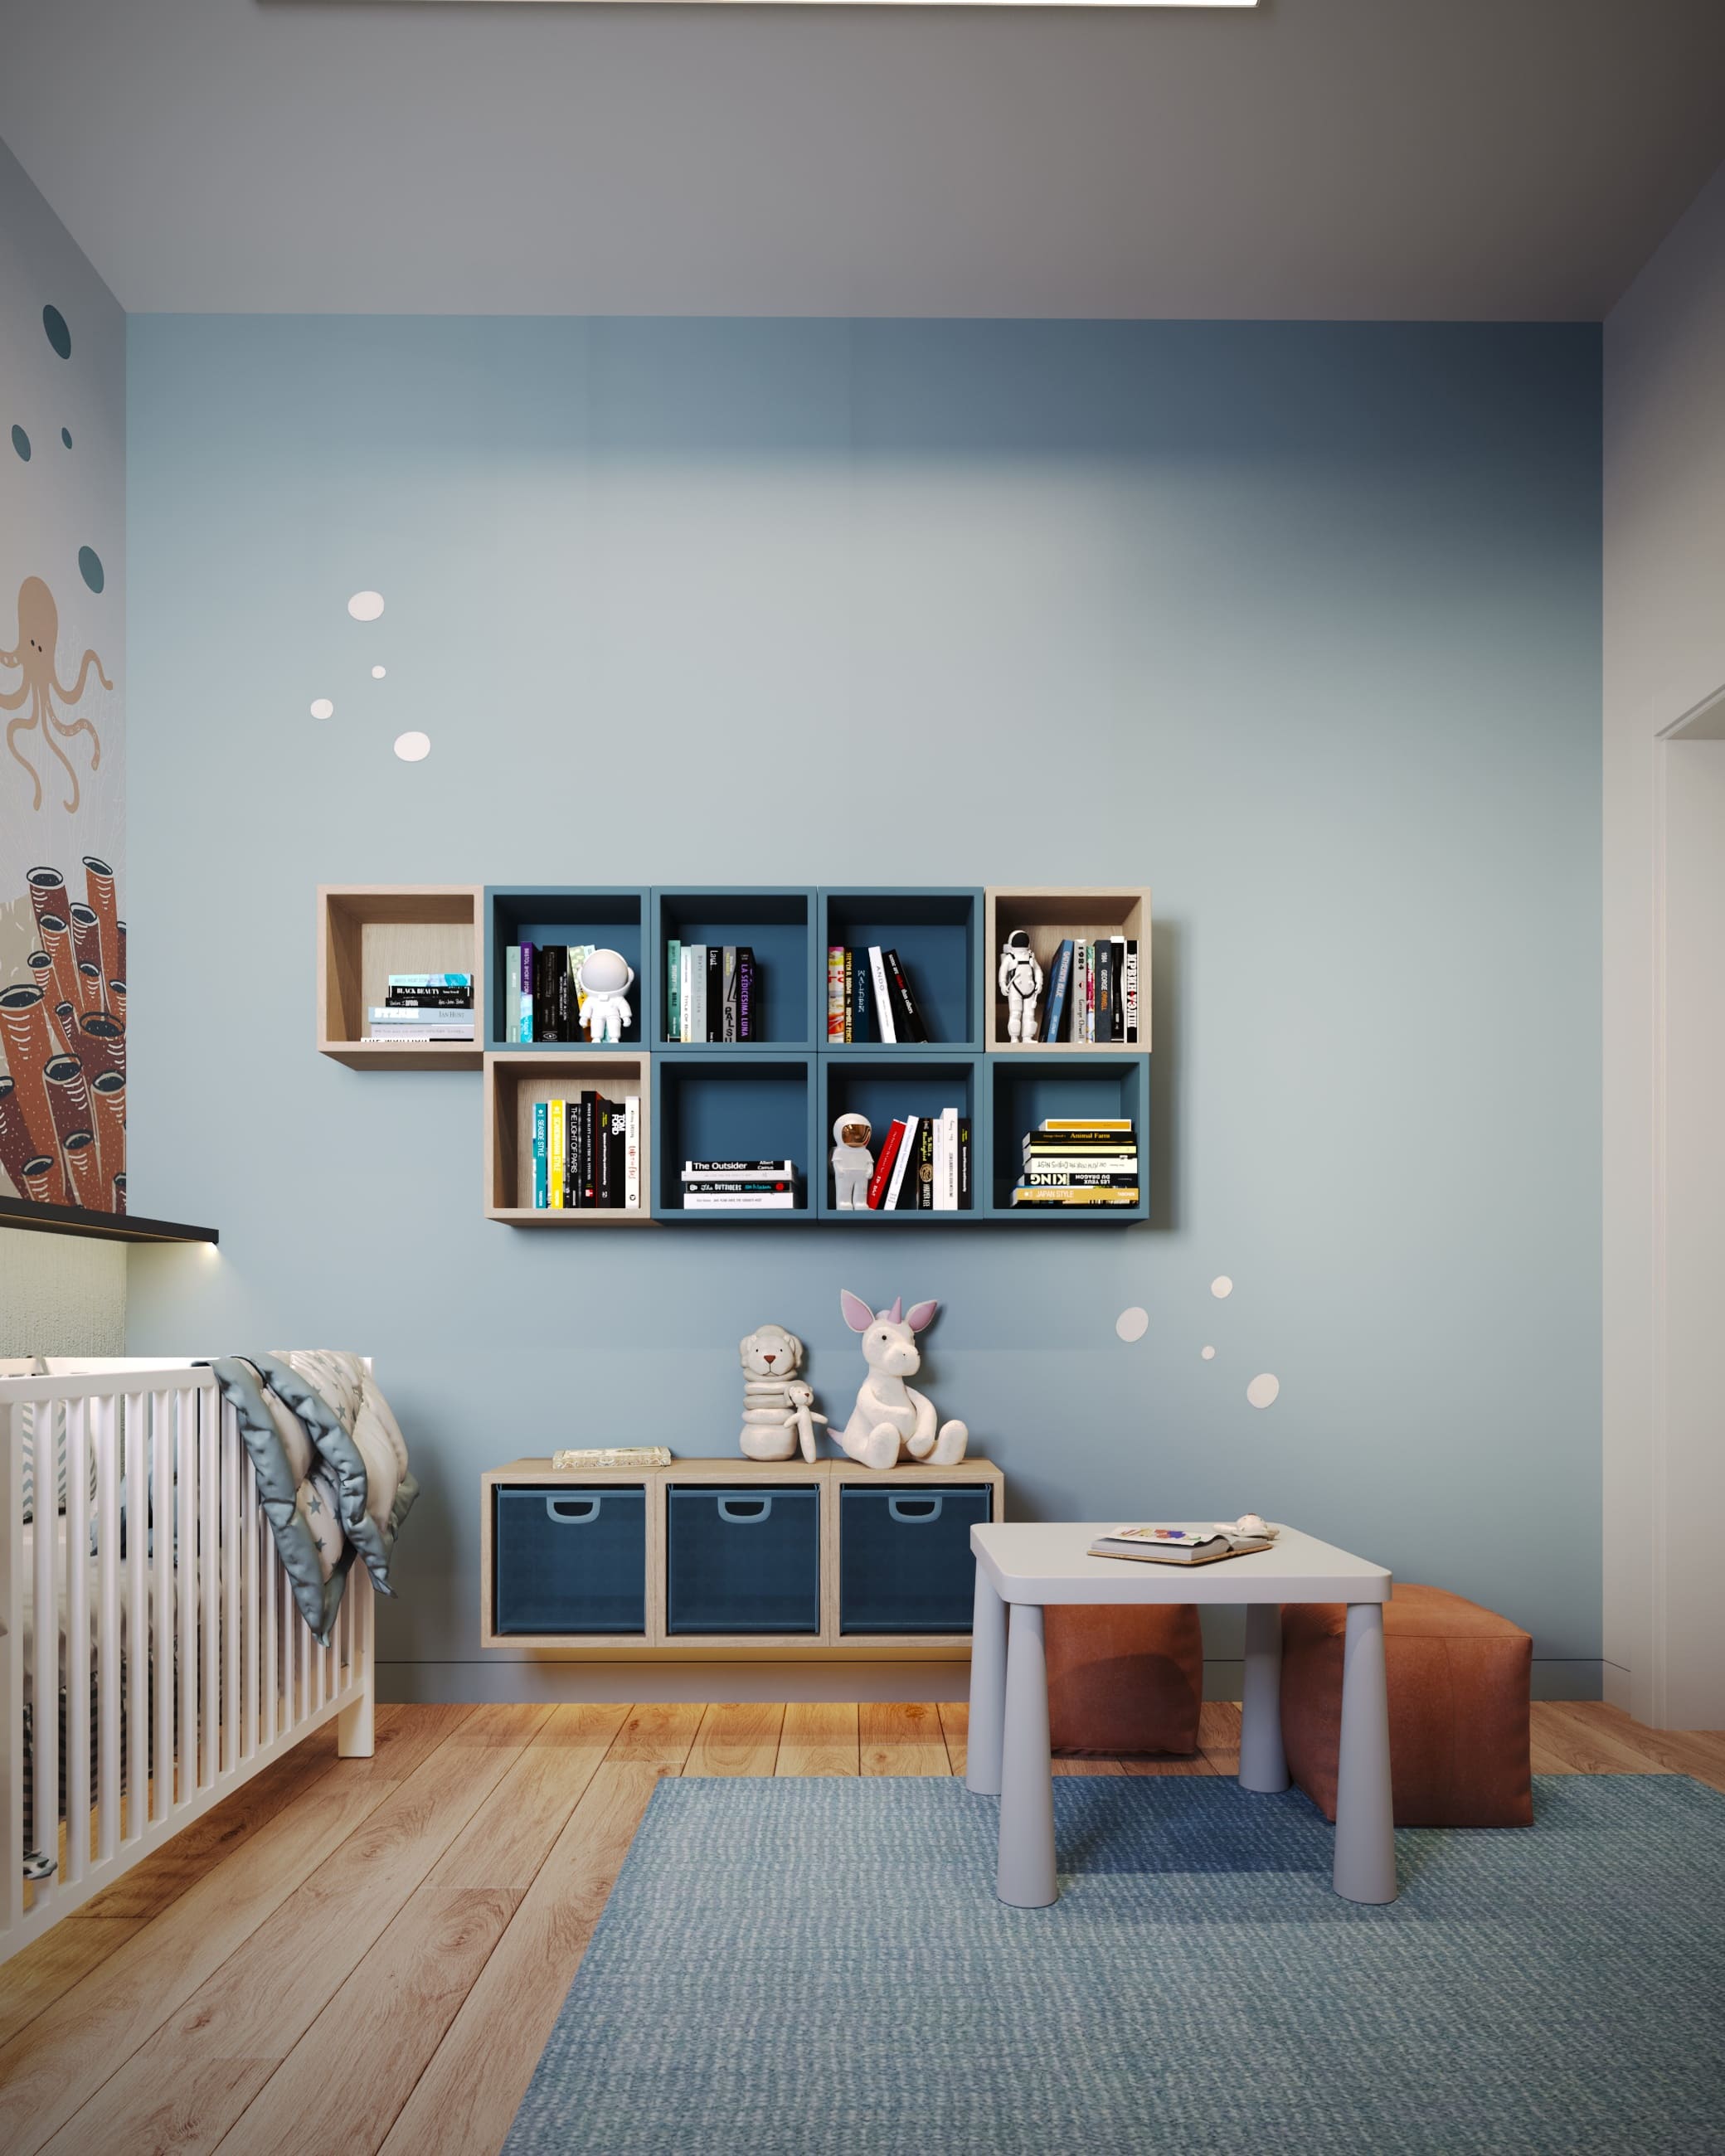 Дизайн интерьера детской спальни | Intuition Design